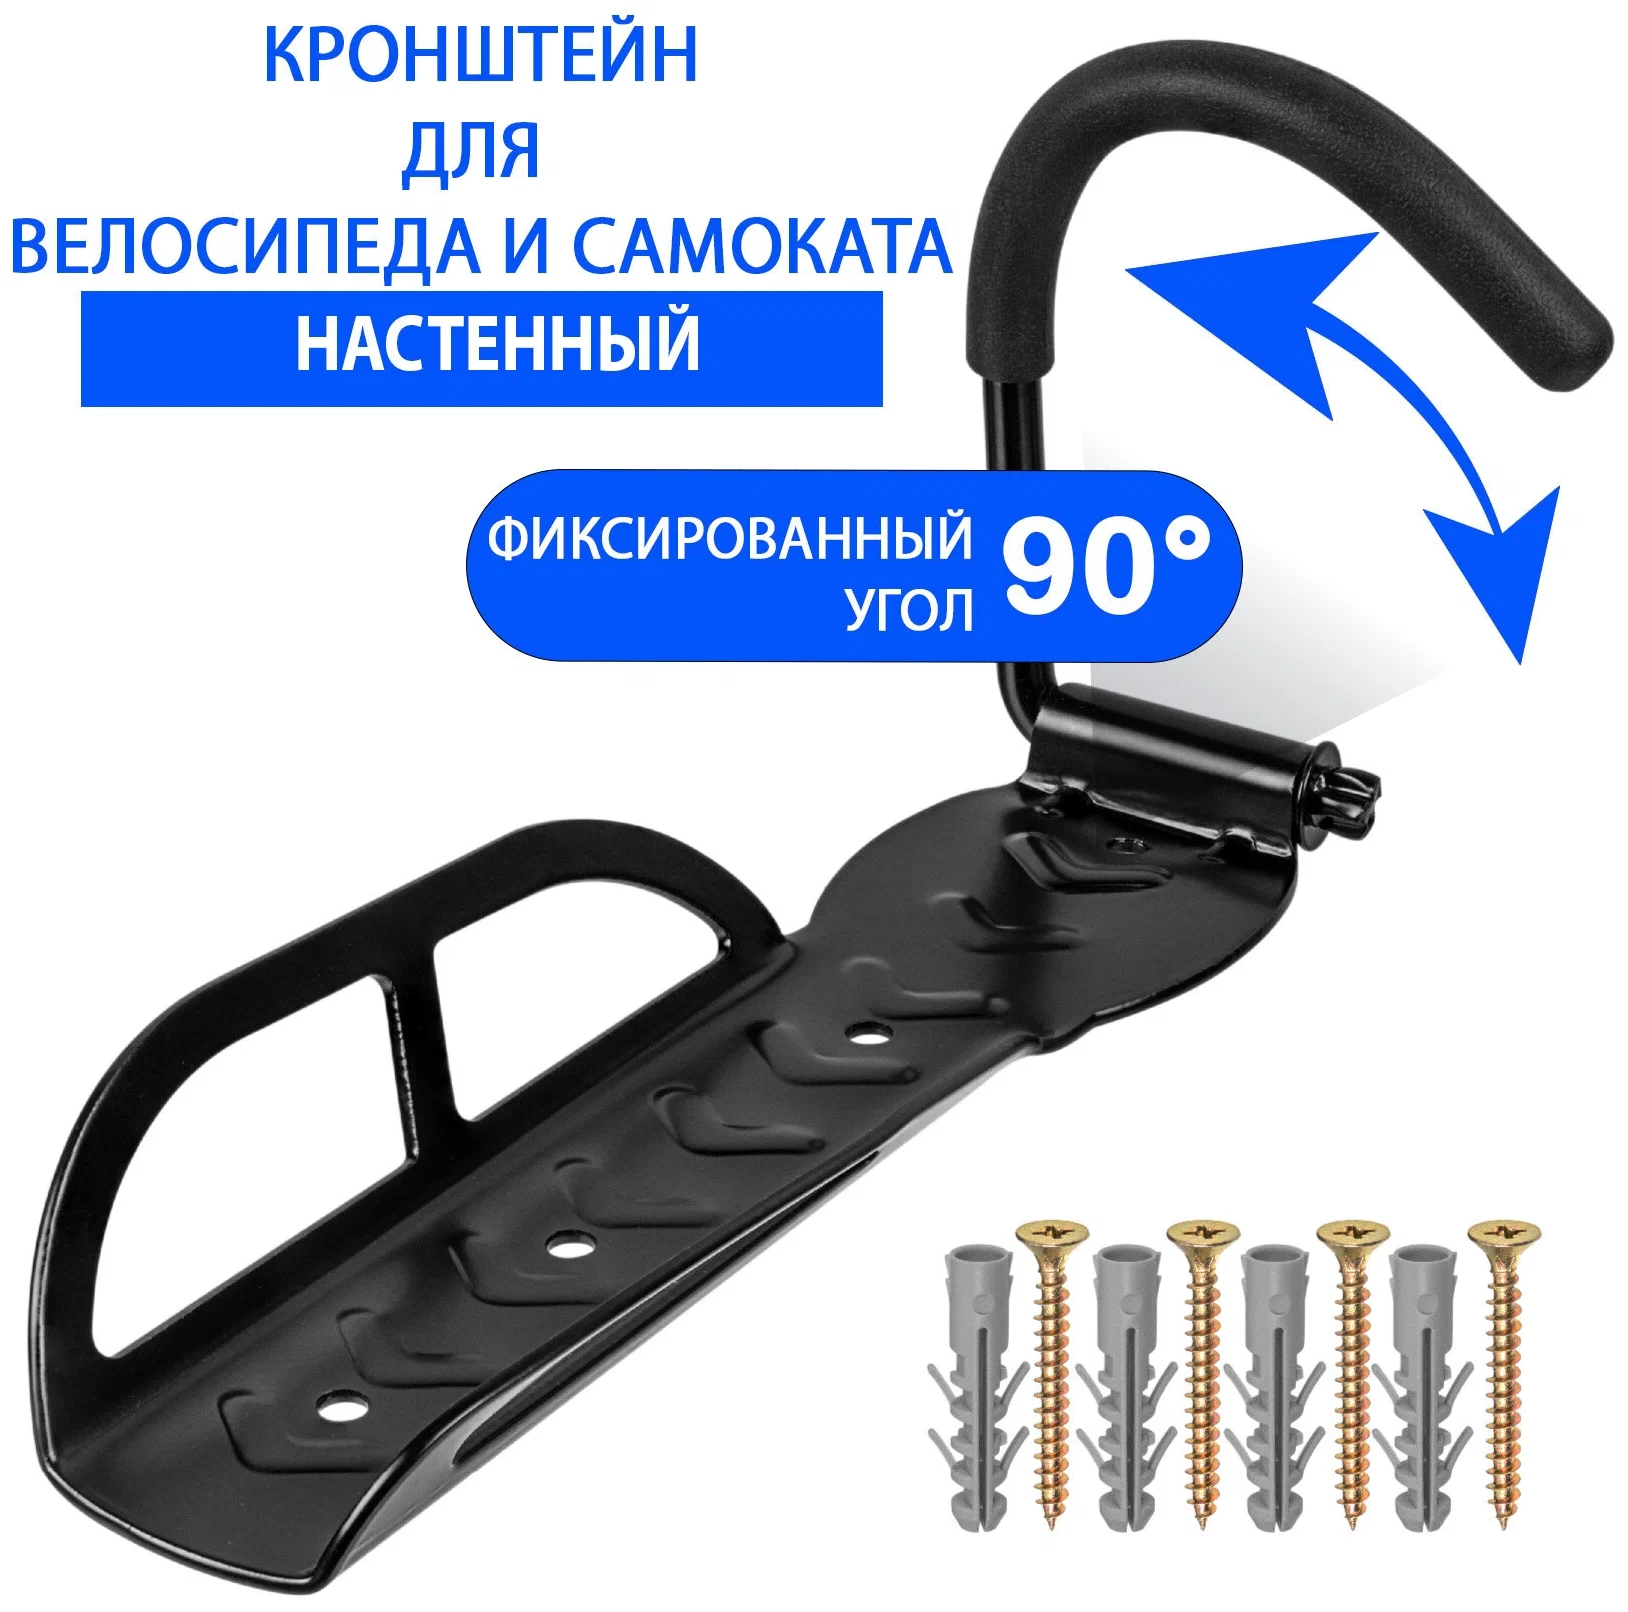 Настенное крепление для самоката Xiaomi M365/Ninebot ES1/ES2 в Челябинске купить по недорогим ценам с доставкой